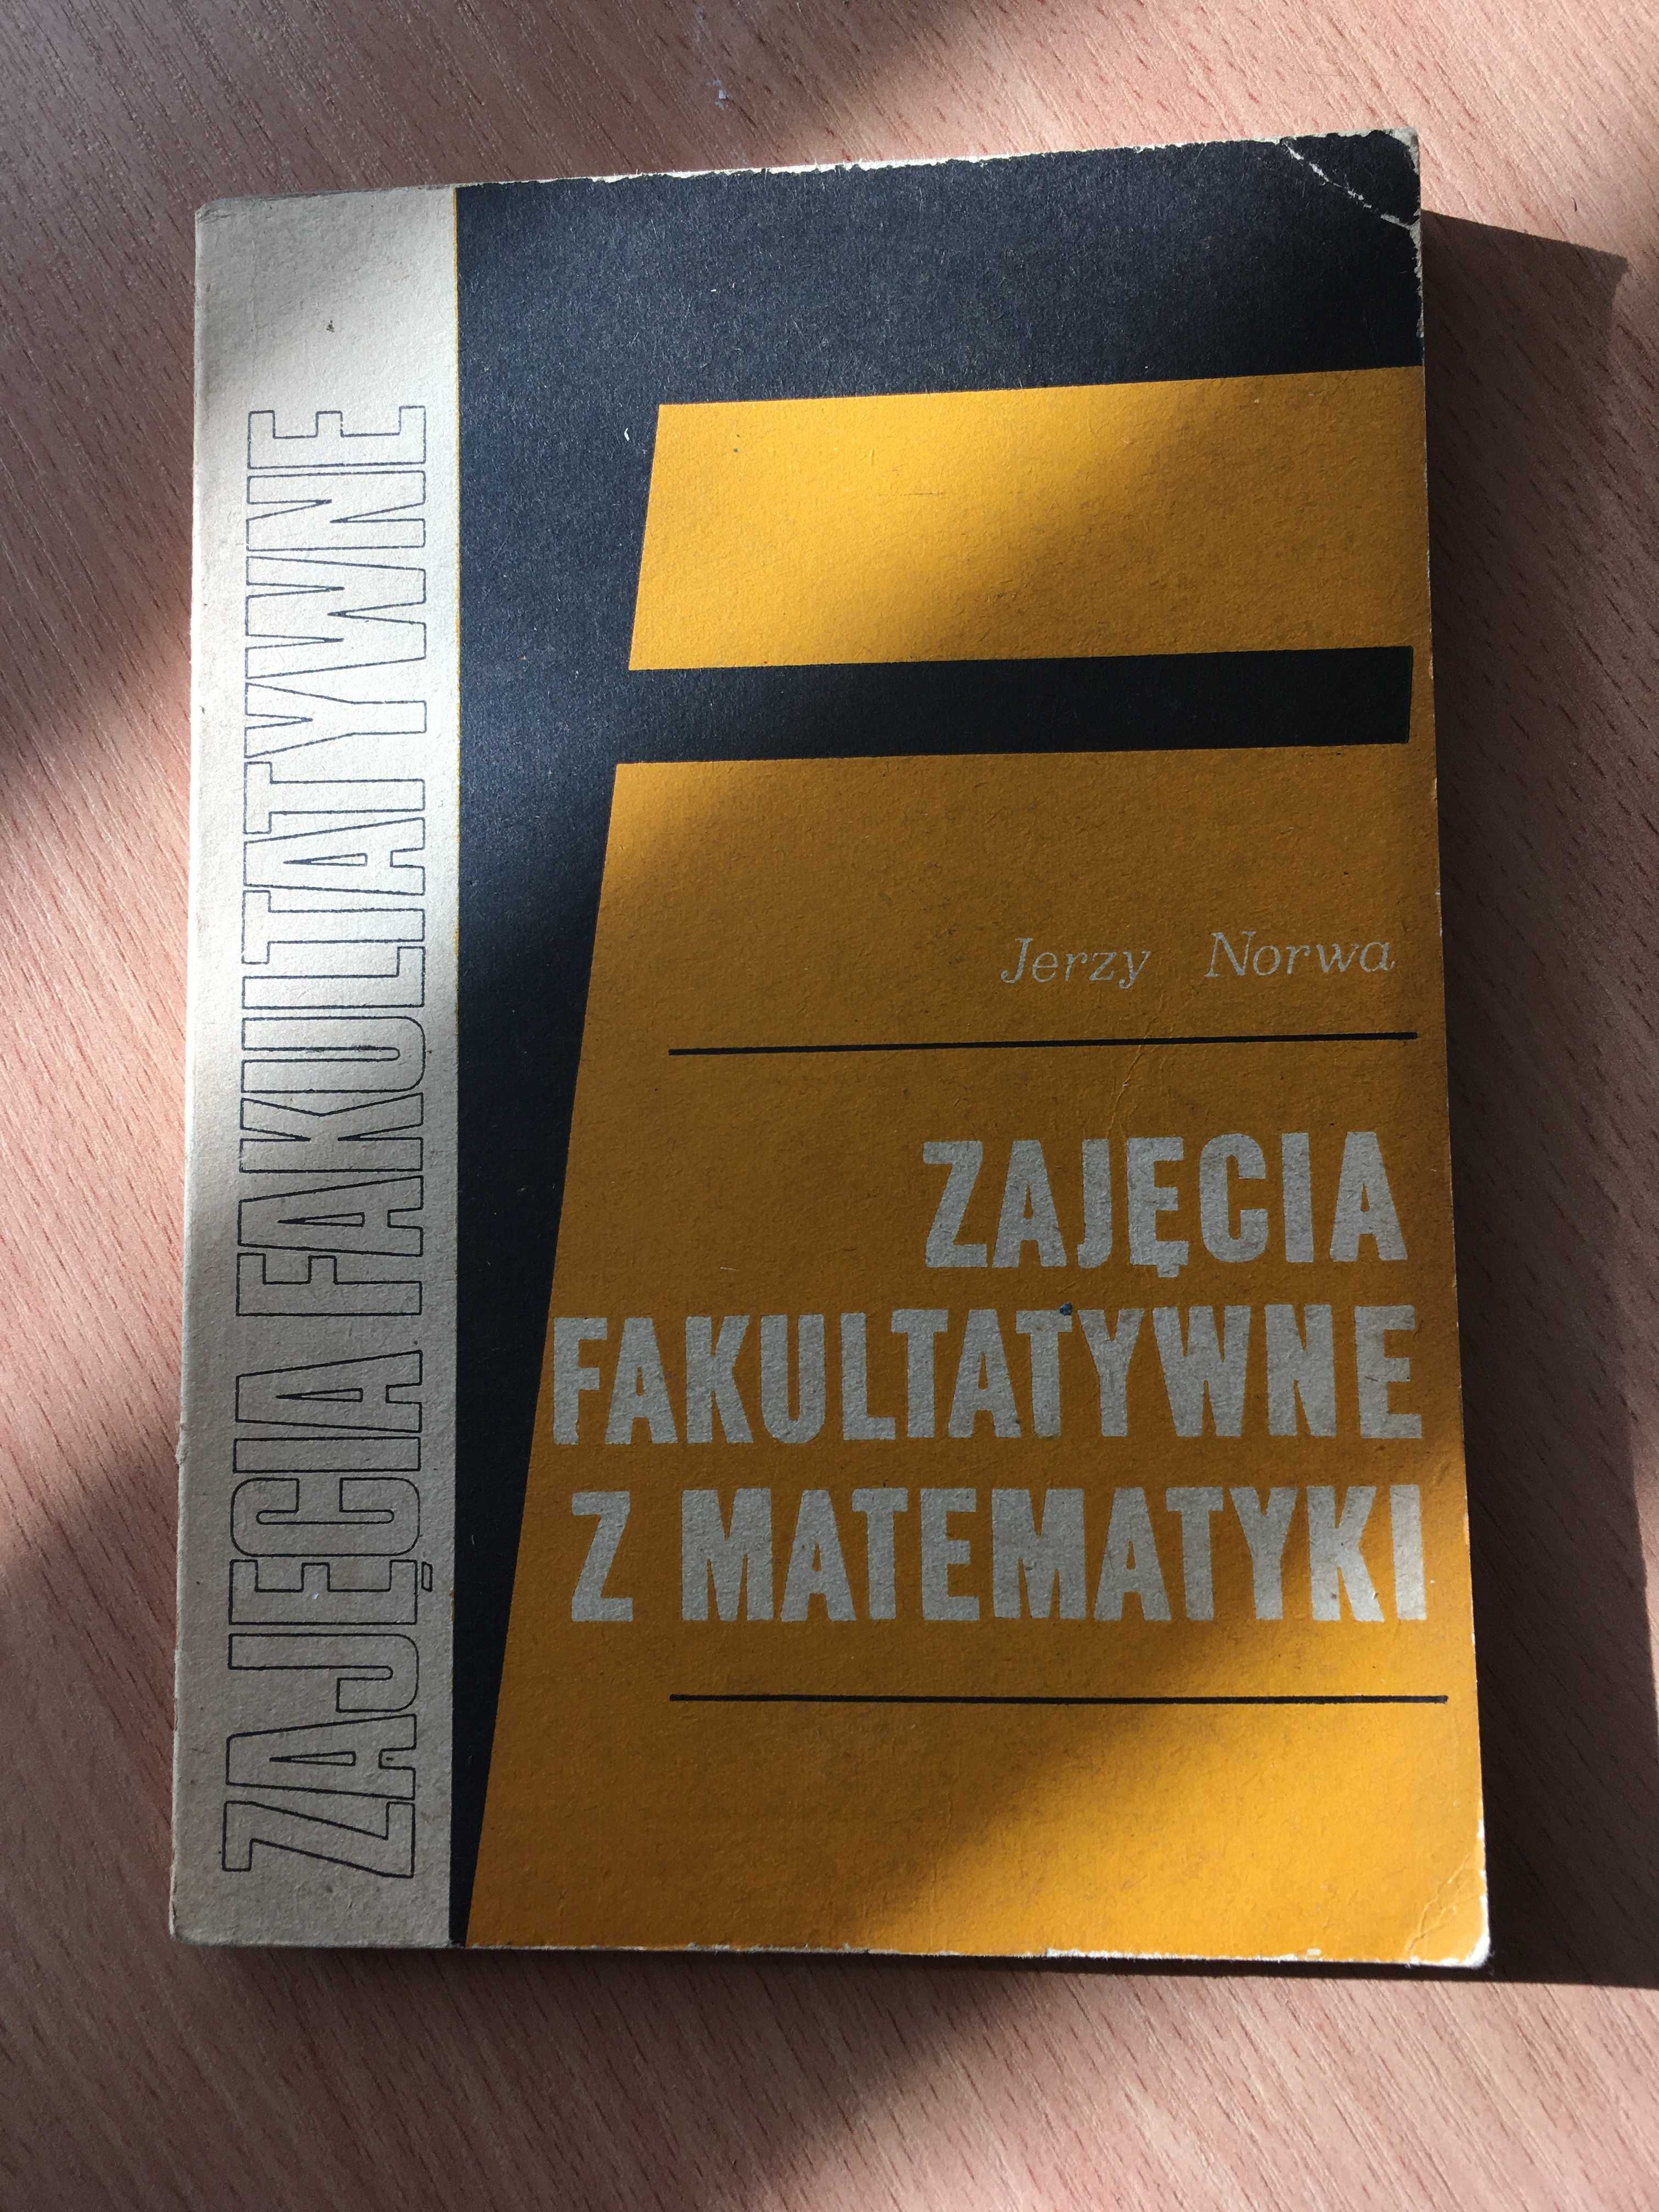 "Zajęcia fakultatywne z matematyki" - Jerzy Norwa